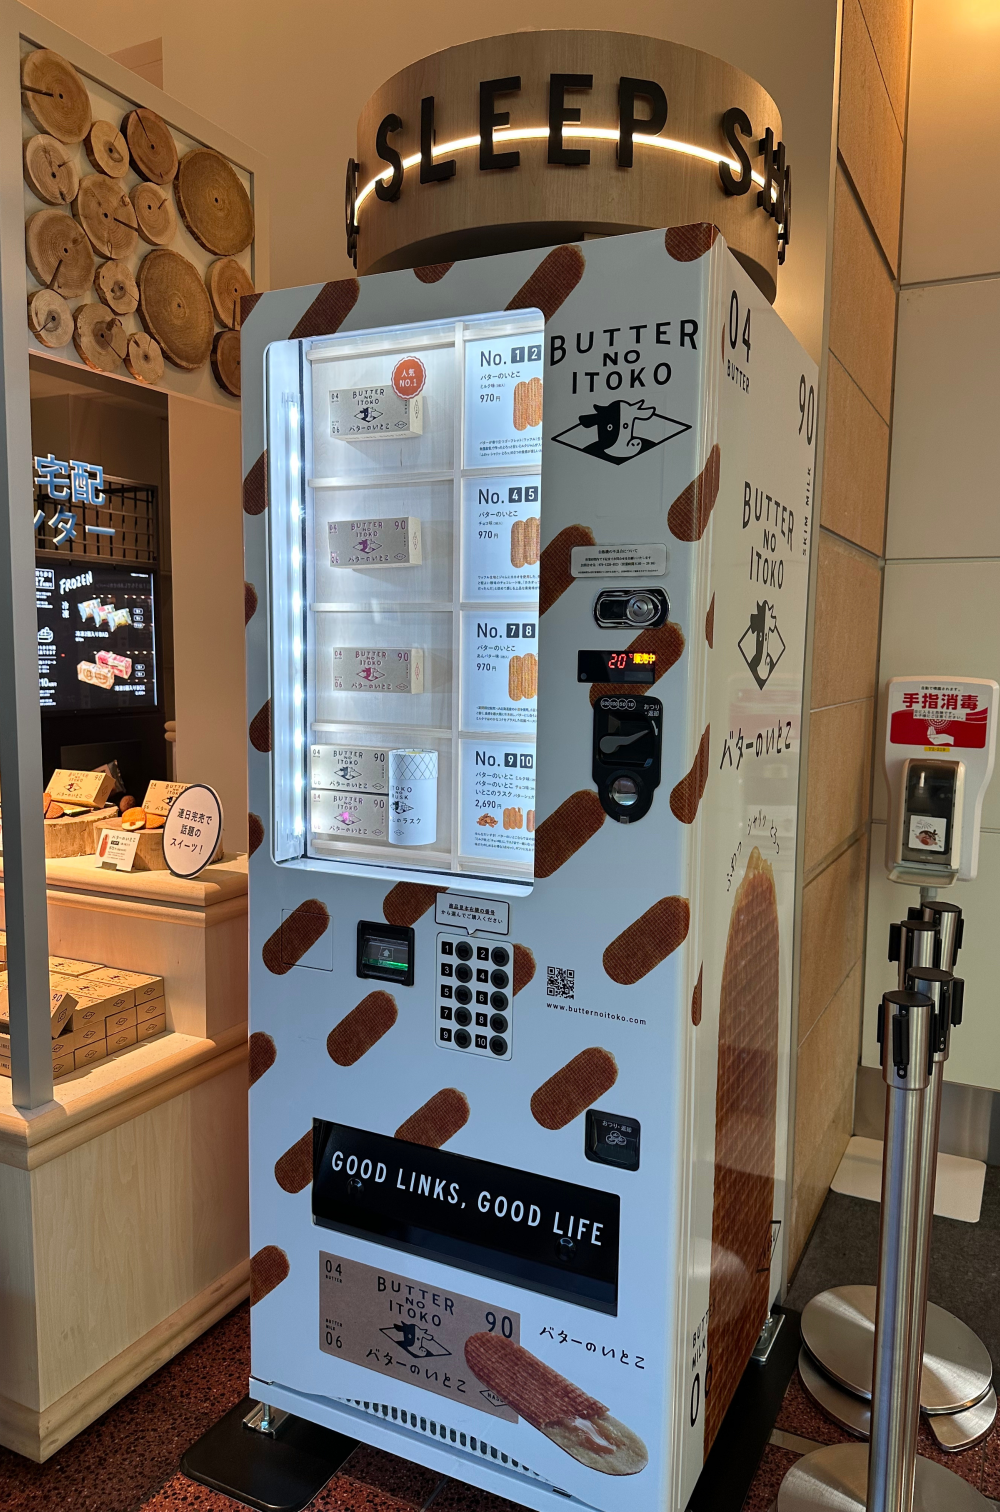 羽田空港の自動販売機がすごい！幻のロケ弁、一風堂のラーメン、有名ブランドのアイテム、大人気スイーツまで買えちゃう